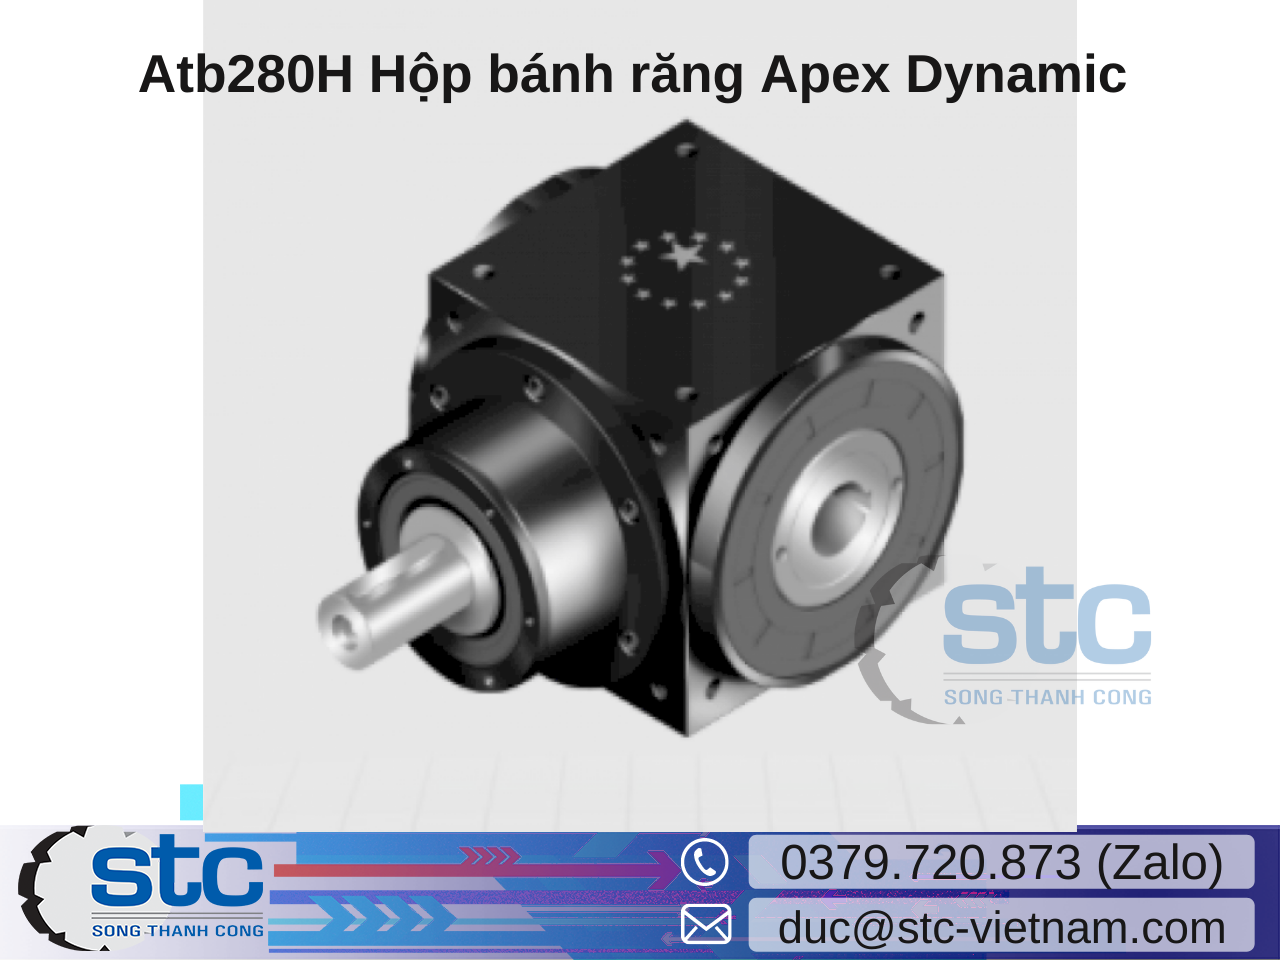 atb280h-hop-banh-rang-apex-dynamic.png